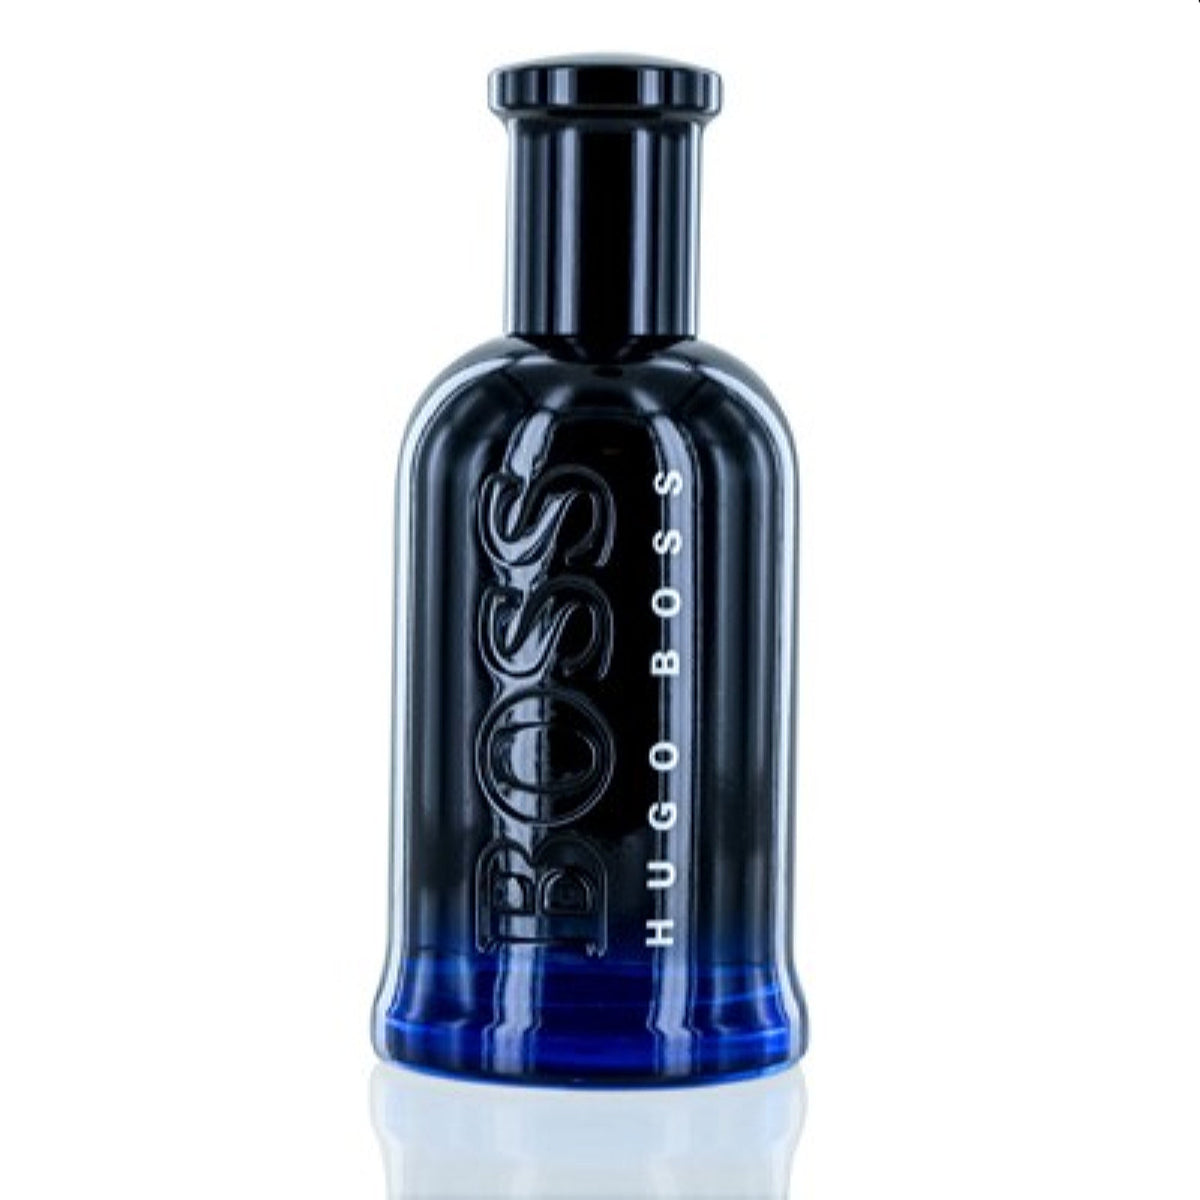 Boss Bottled Night Hugo Boss Edt Spray Tester 3.3 Oz (100 Ml) For Men  